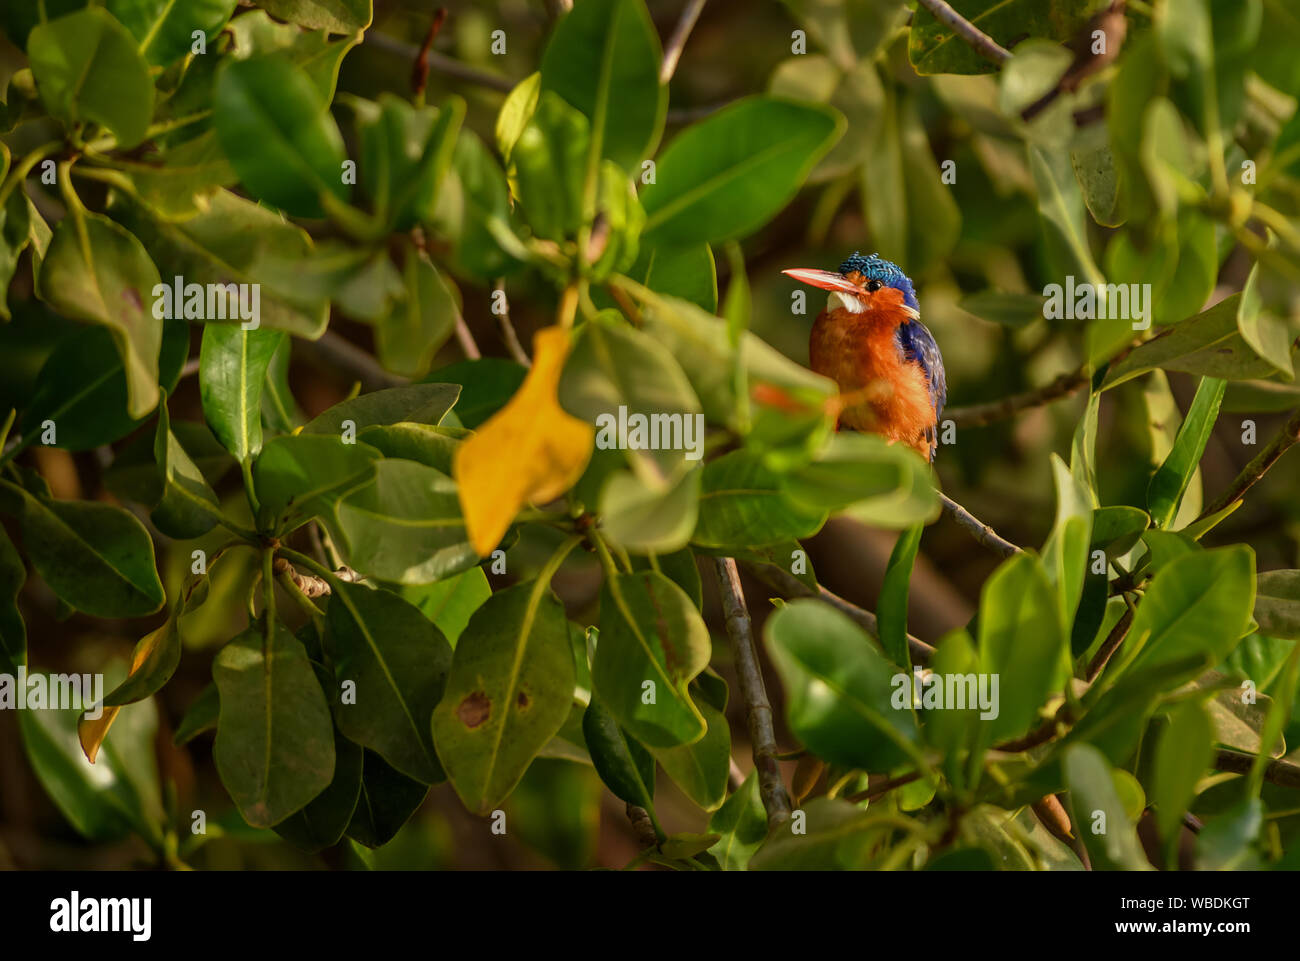 Malachit Eisvogel - Alcedo cristata, schöne kleine blaue und orange river Kingfisher aus westlichen Afrikanischen Flüssen und Mangroven, La Somone, Senegal. Stockfoto